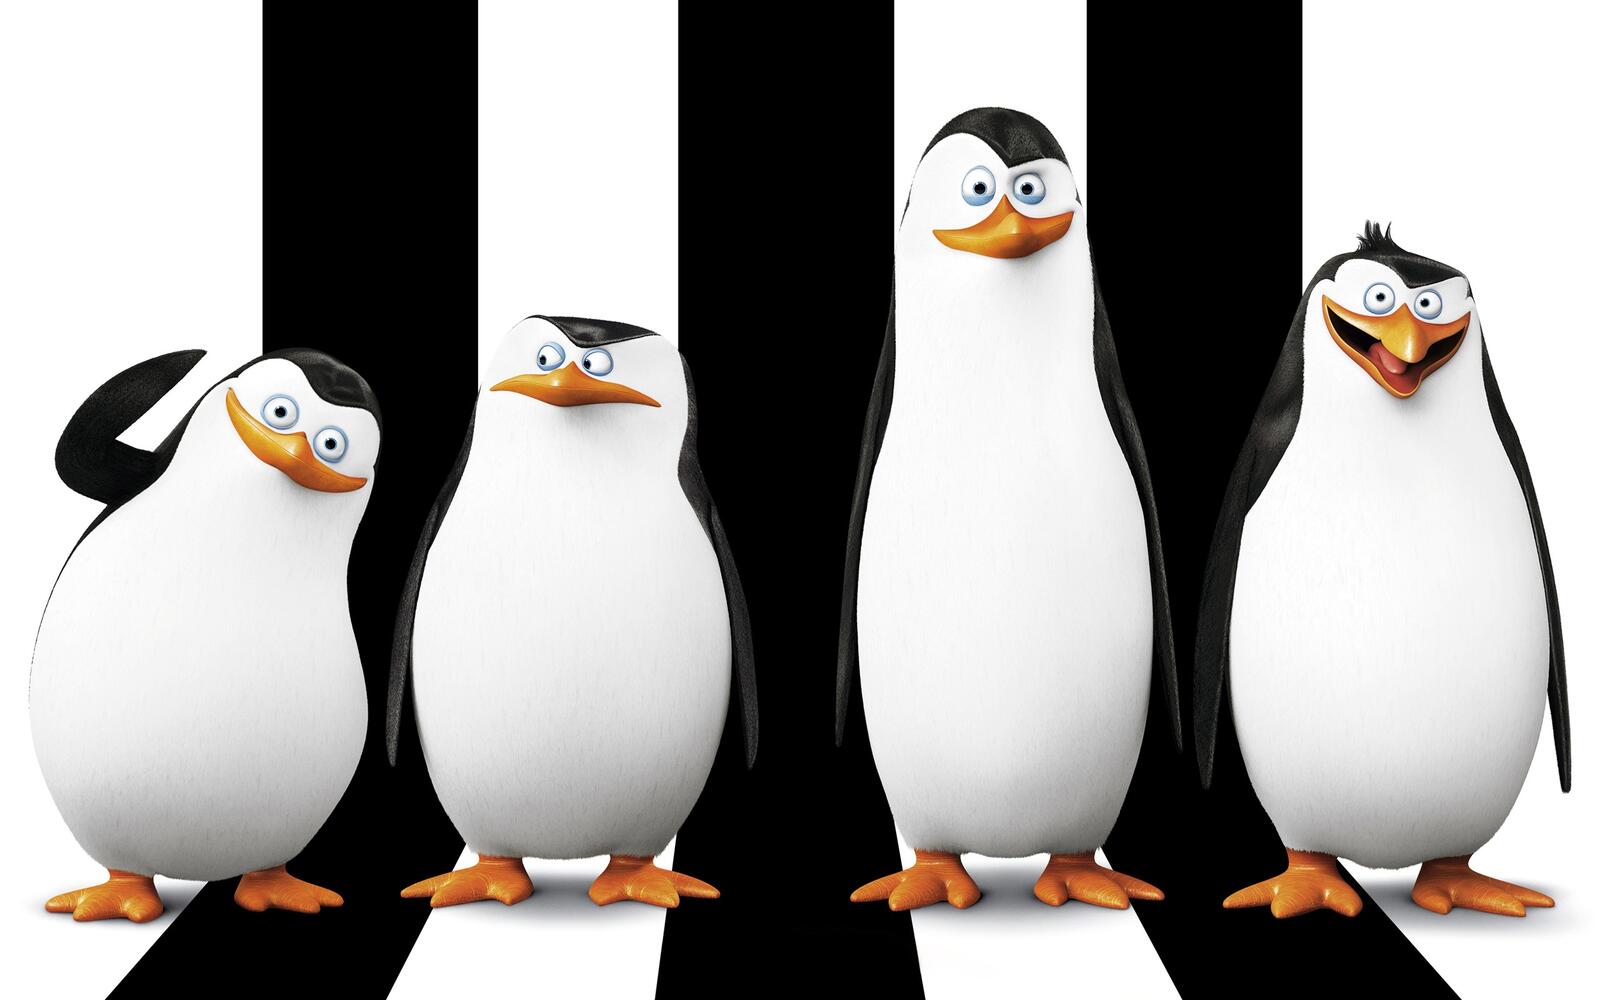 Wallpapers madagascar penguins black on the desktop